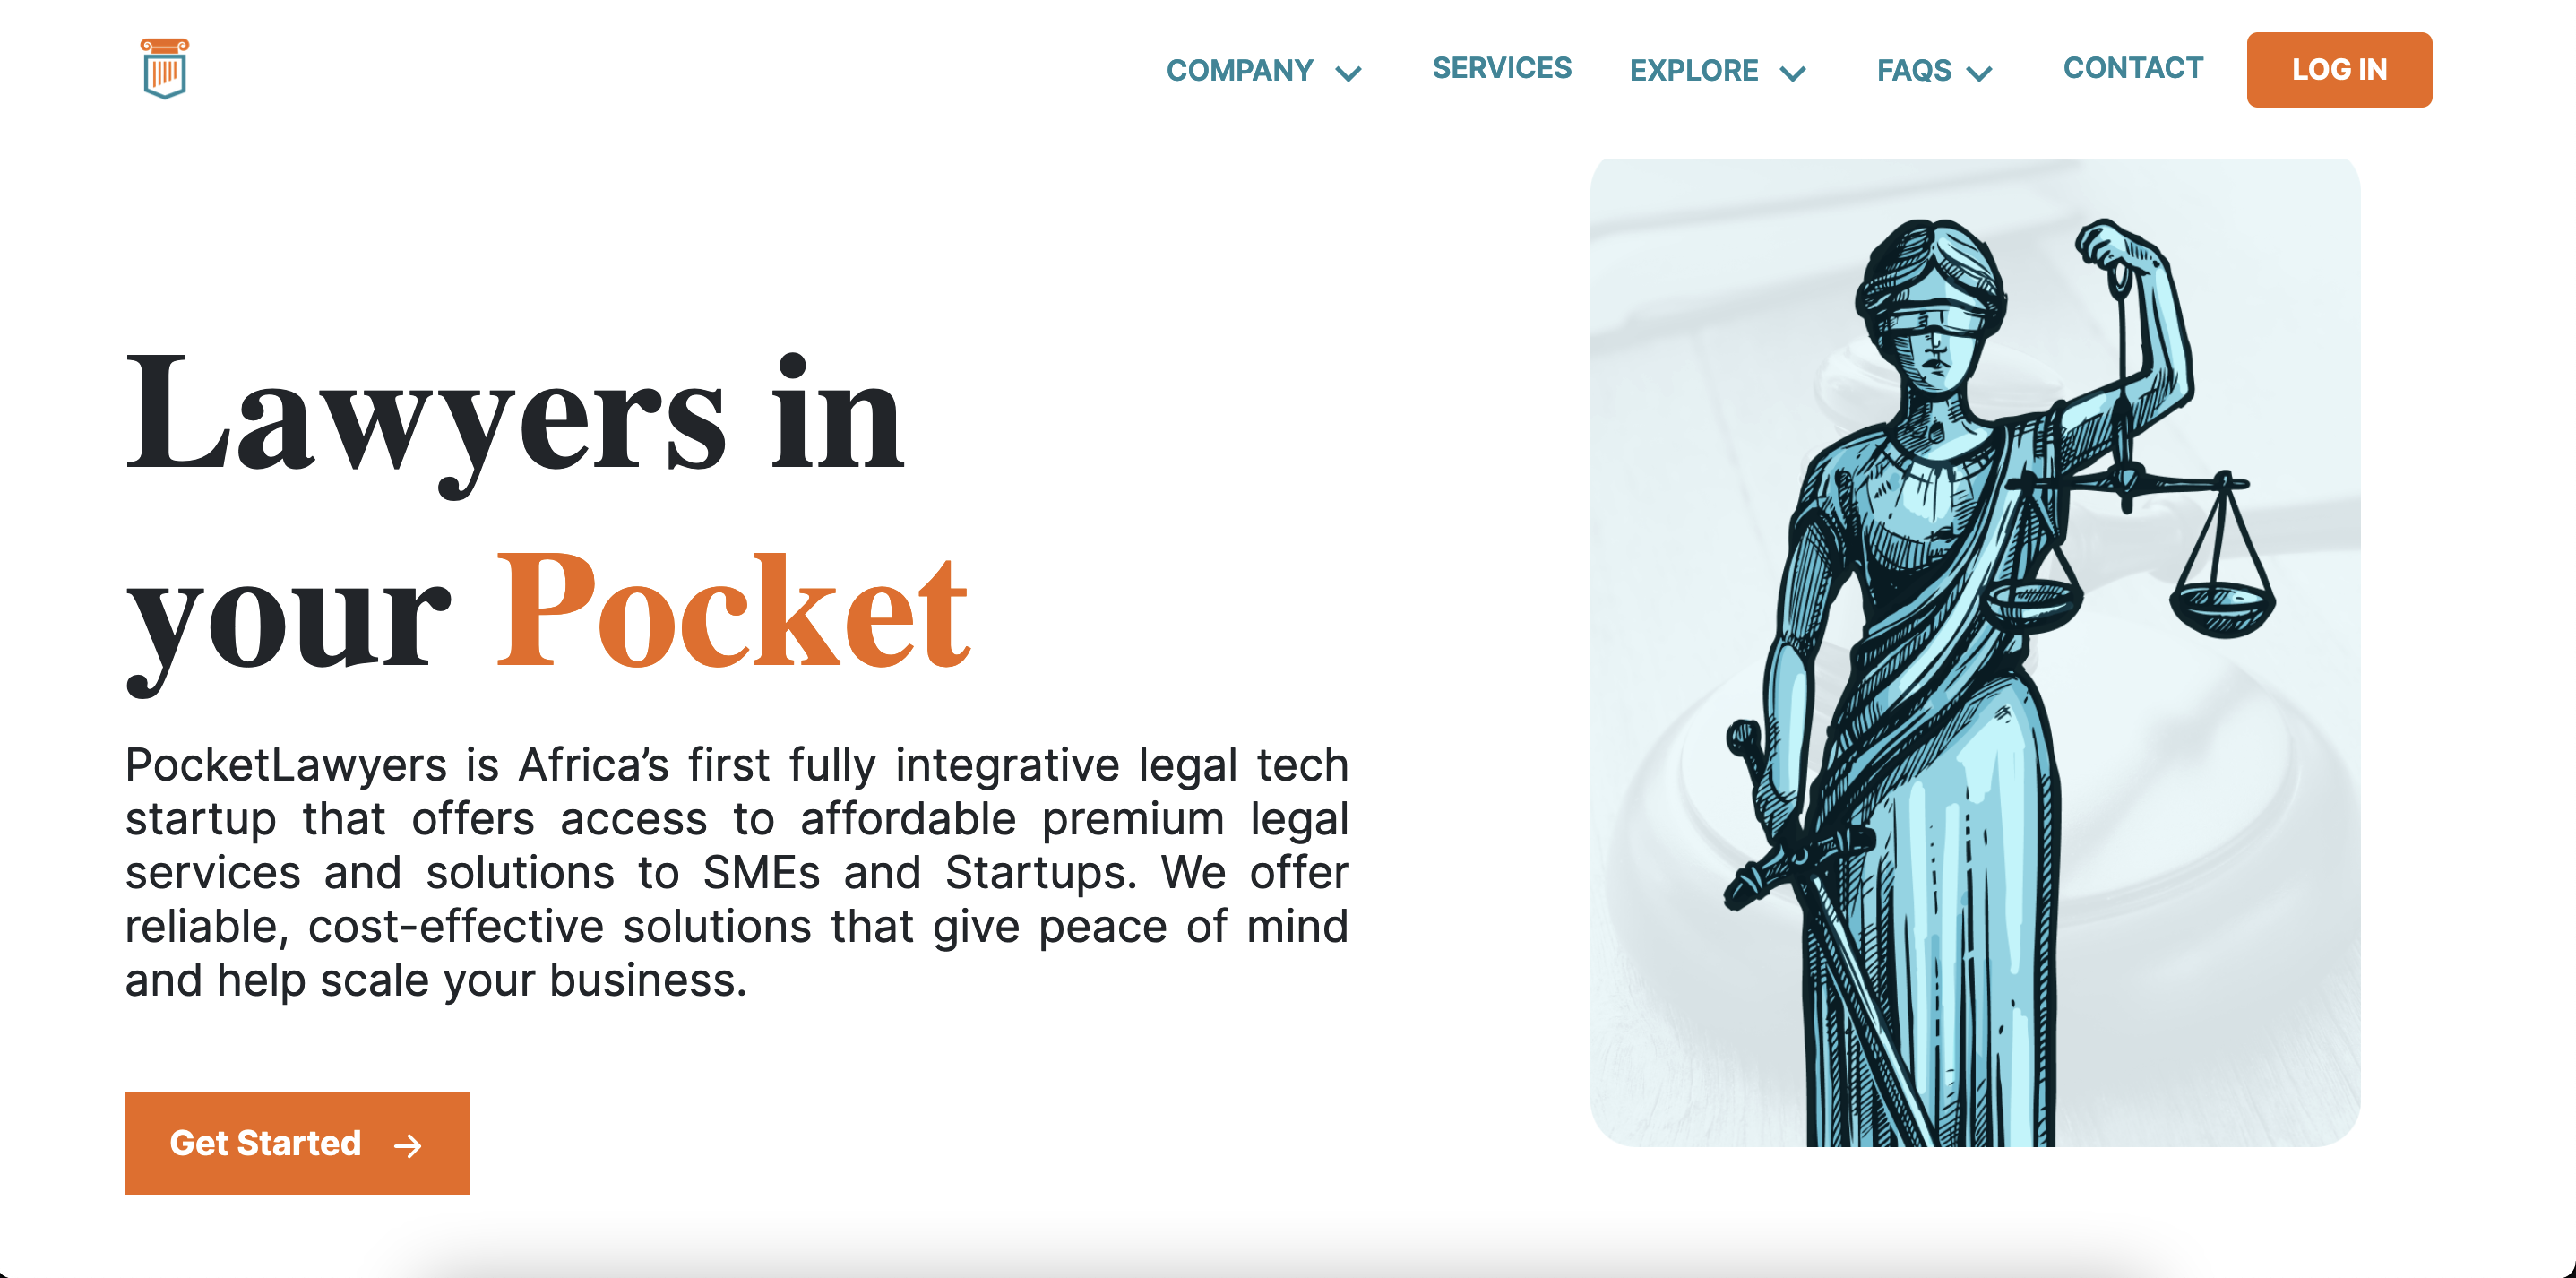 Pocket Lawyers